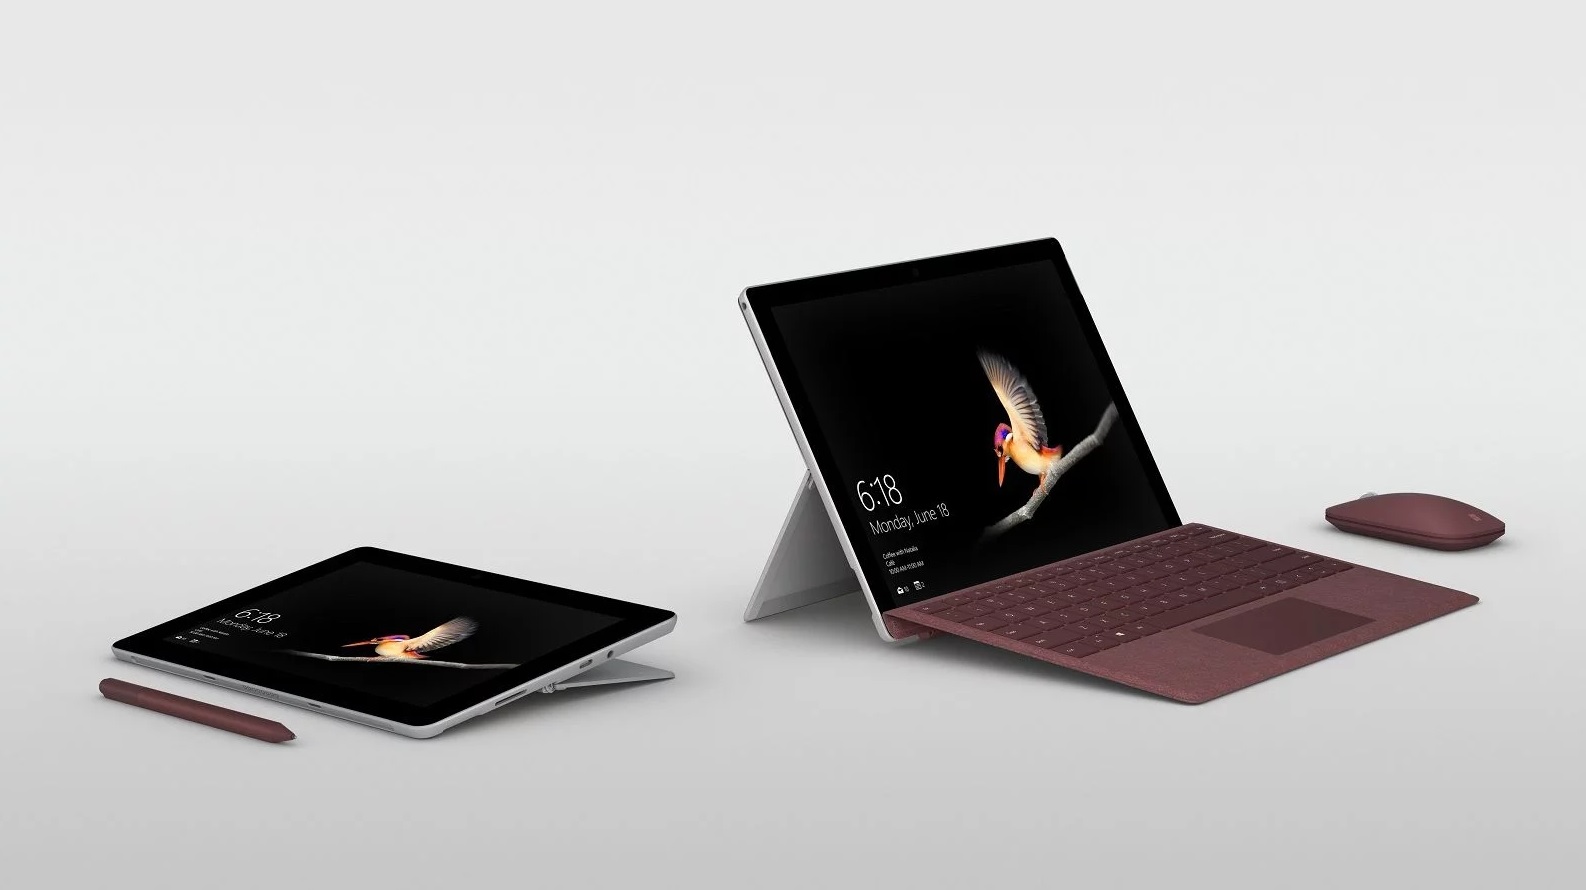 Het nieuwste product van Microsoft, de Surface Go